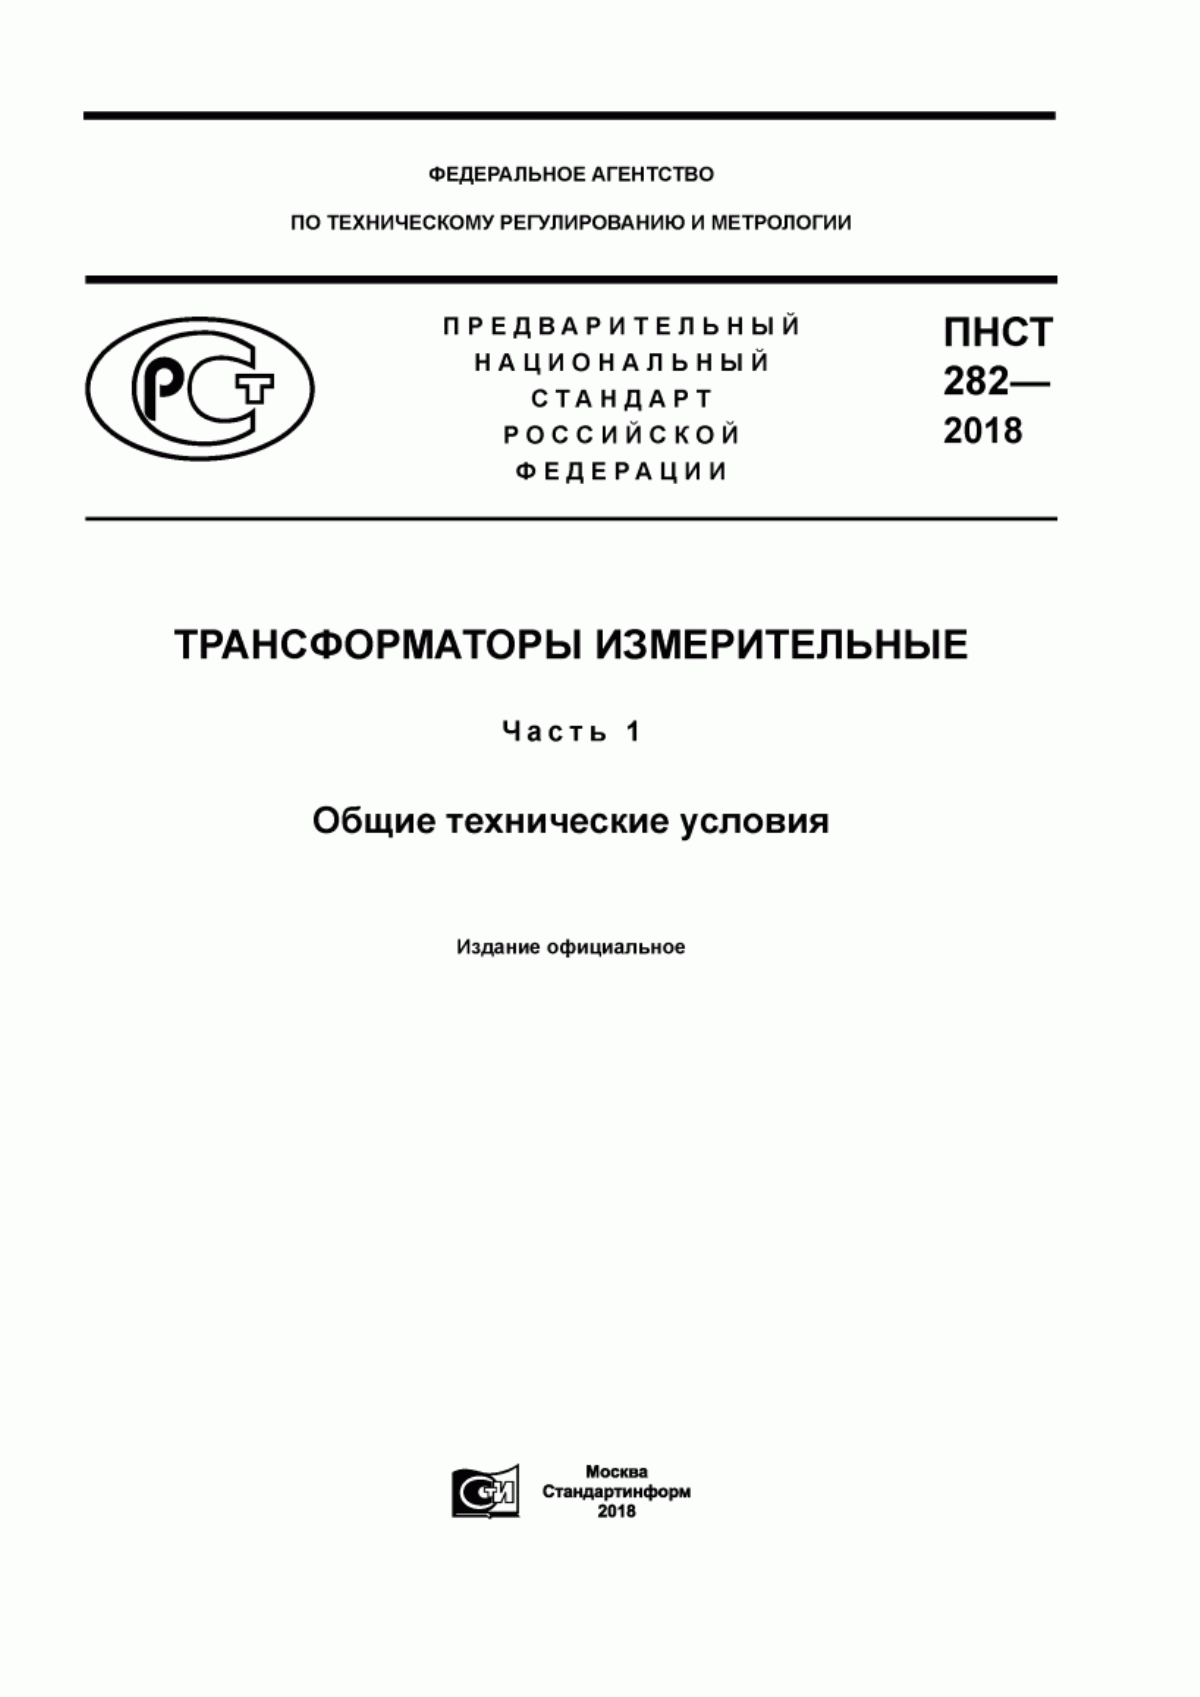 ПНСТ 282-2018 Трансформаторы измерительные. Часть 1. Общие технические условия